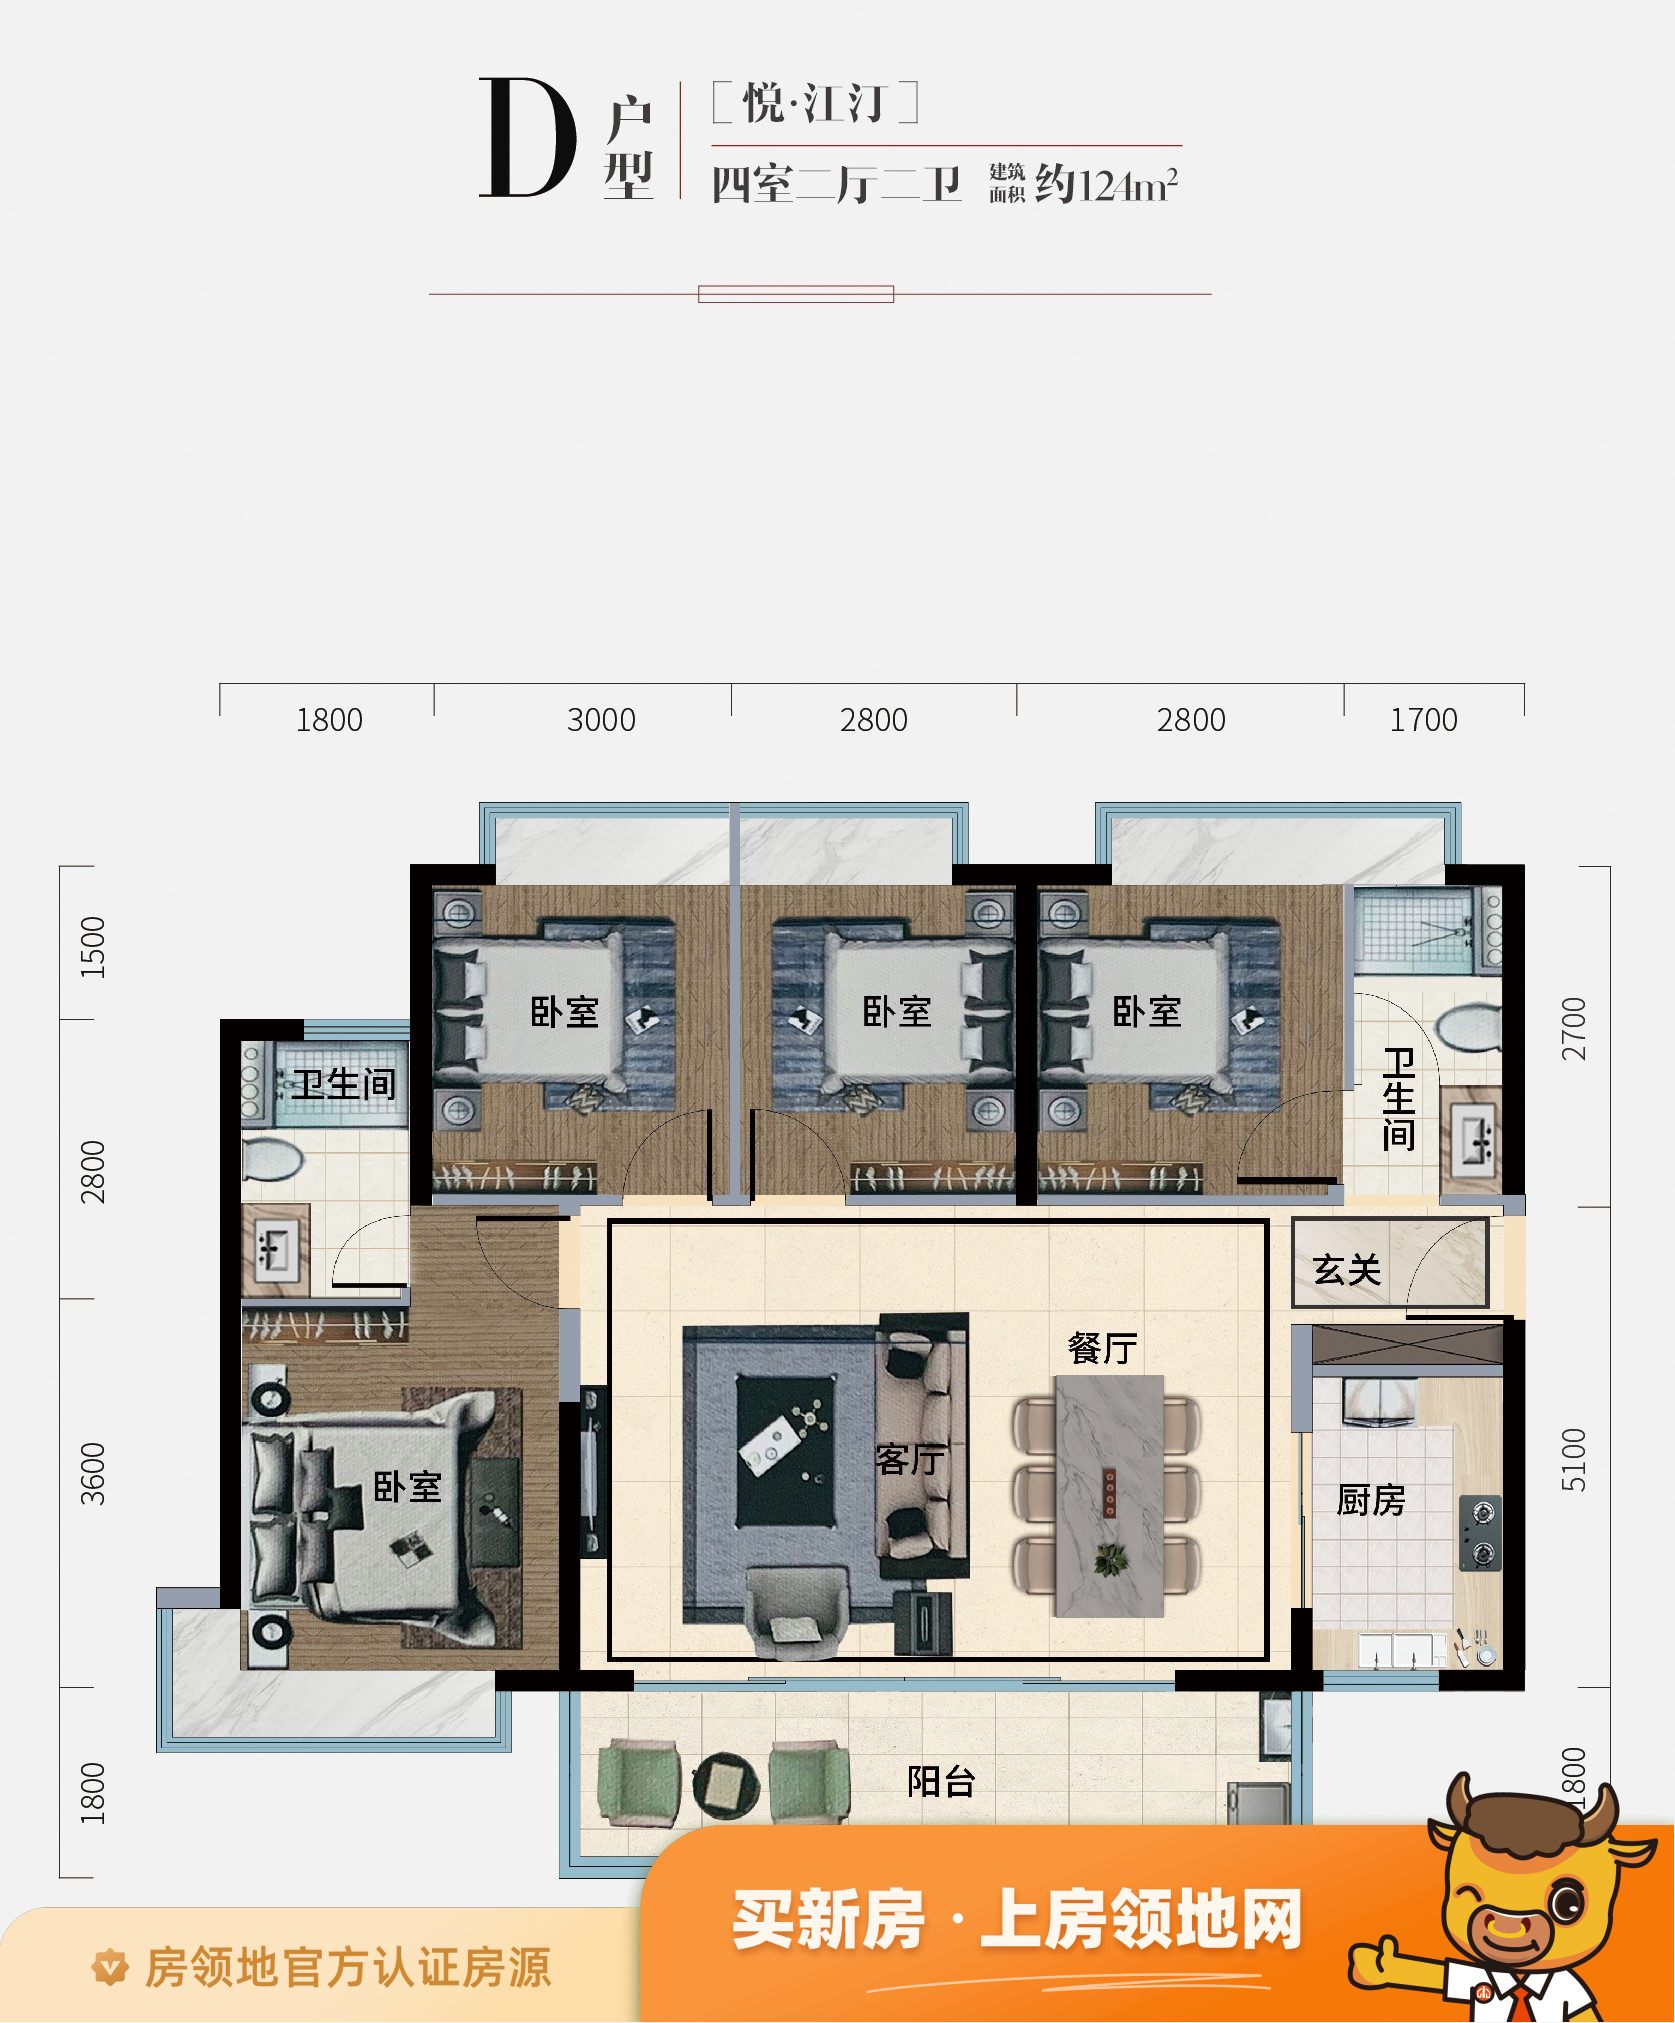 苏州凤凰文化广场公寓户型图4室2厅2卫